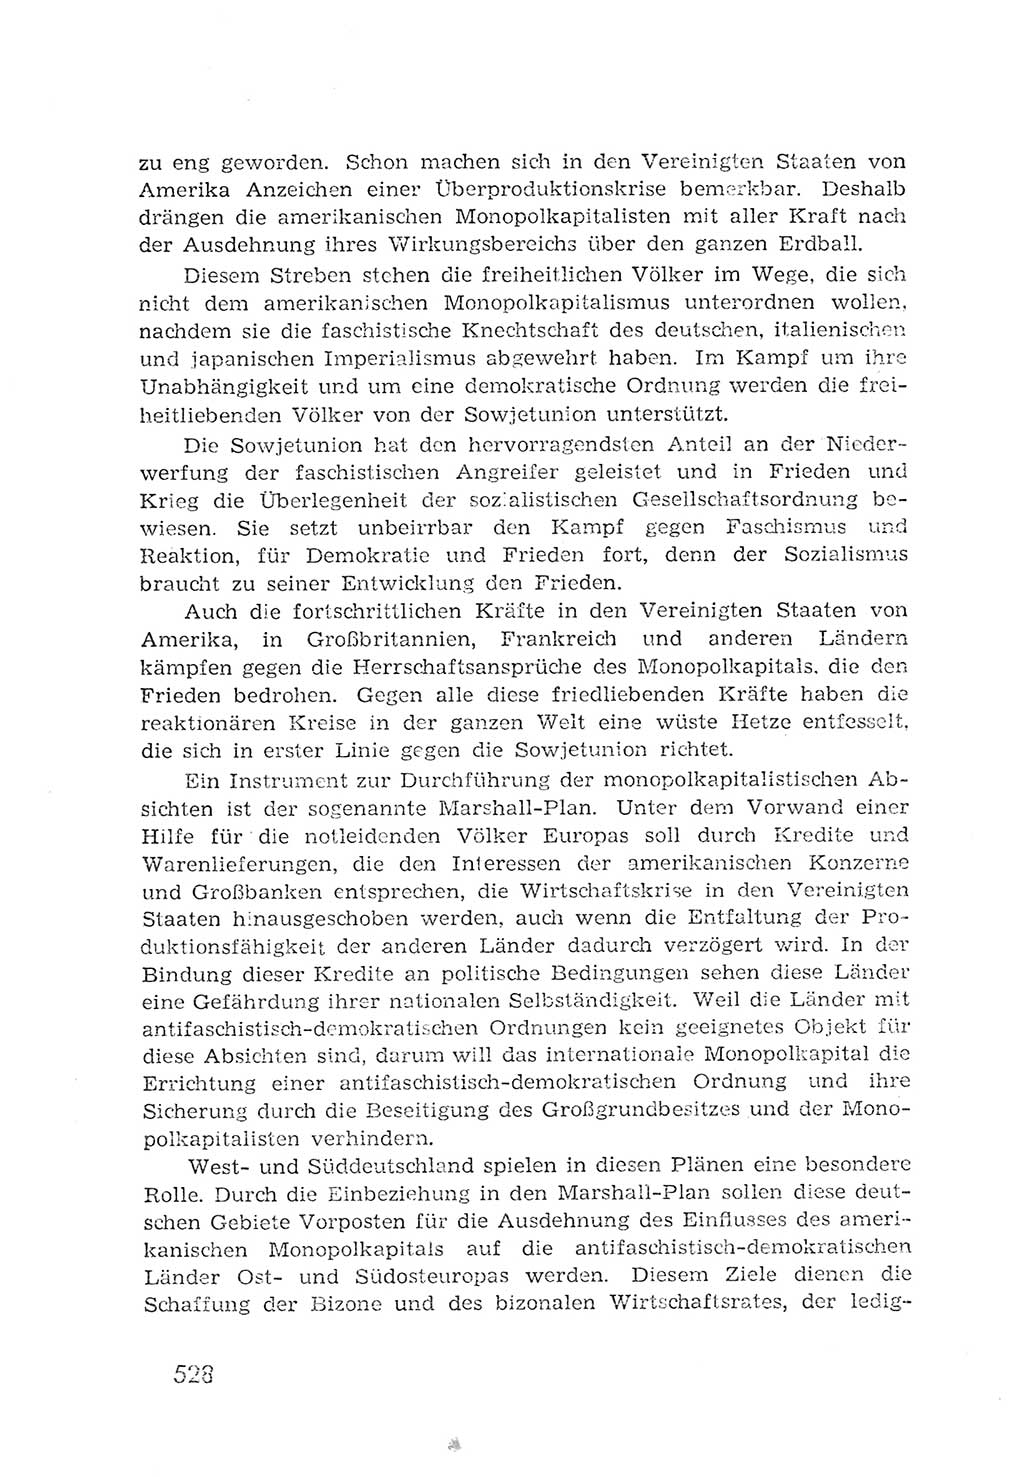 Protokoll der Verhandlungen des 2. Parteitages der Sozialistischen Einheitspartei Deutschlands (SED) [Sowjetische Besatzungszone (SBZ) Deutschlands] 1947, Seite 528 (Prot. Verh. 2. PT SED SBZ Dtl. 1947, S. 528)